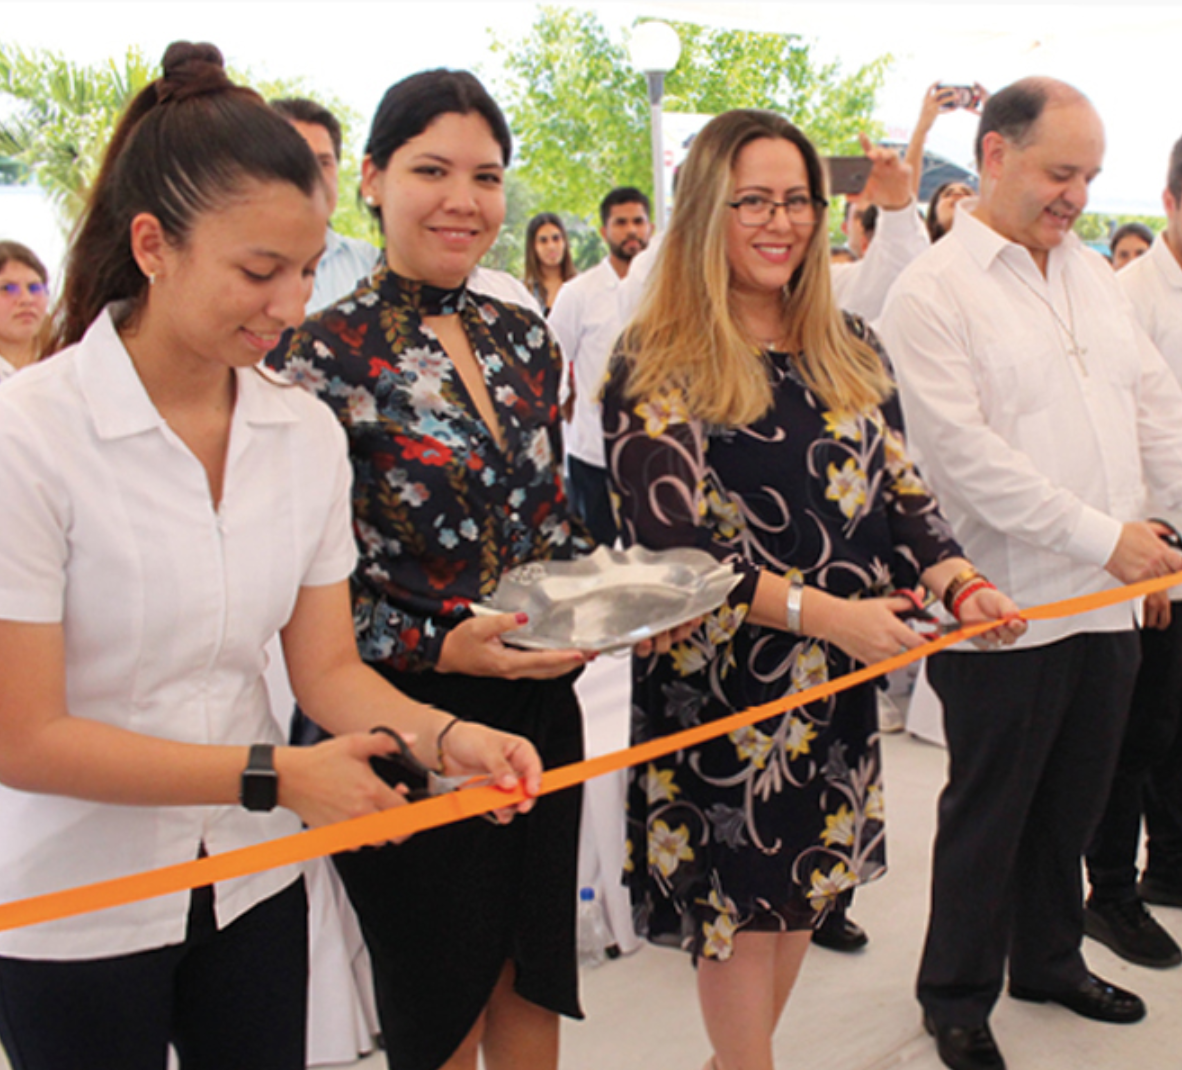 La Escuela de Odontología de la Universidad Anáhuac Cancún inició este primer trimestre del año con la inauguración de los laboratorios de Odontología, donde los alumnos podrán realizar sus prácticas académicas desde el primer semestre.